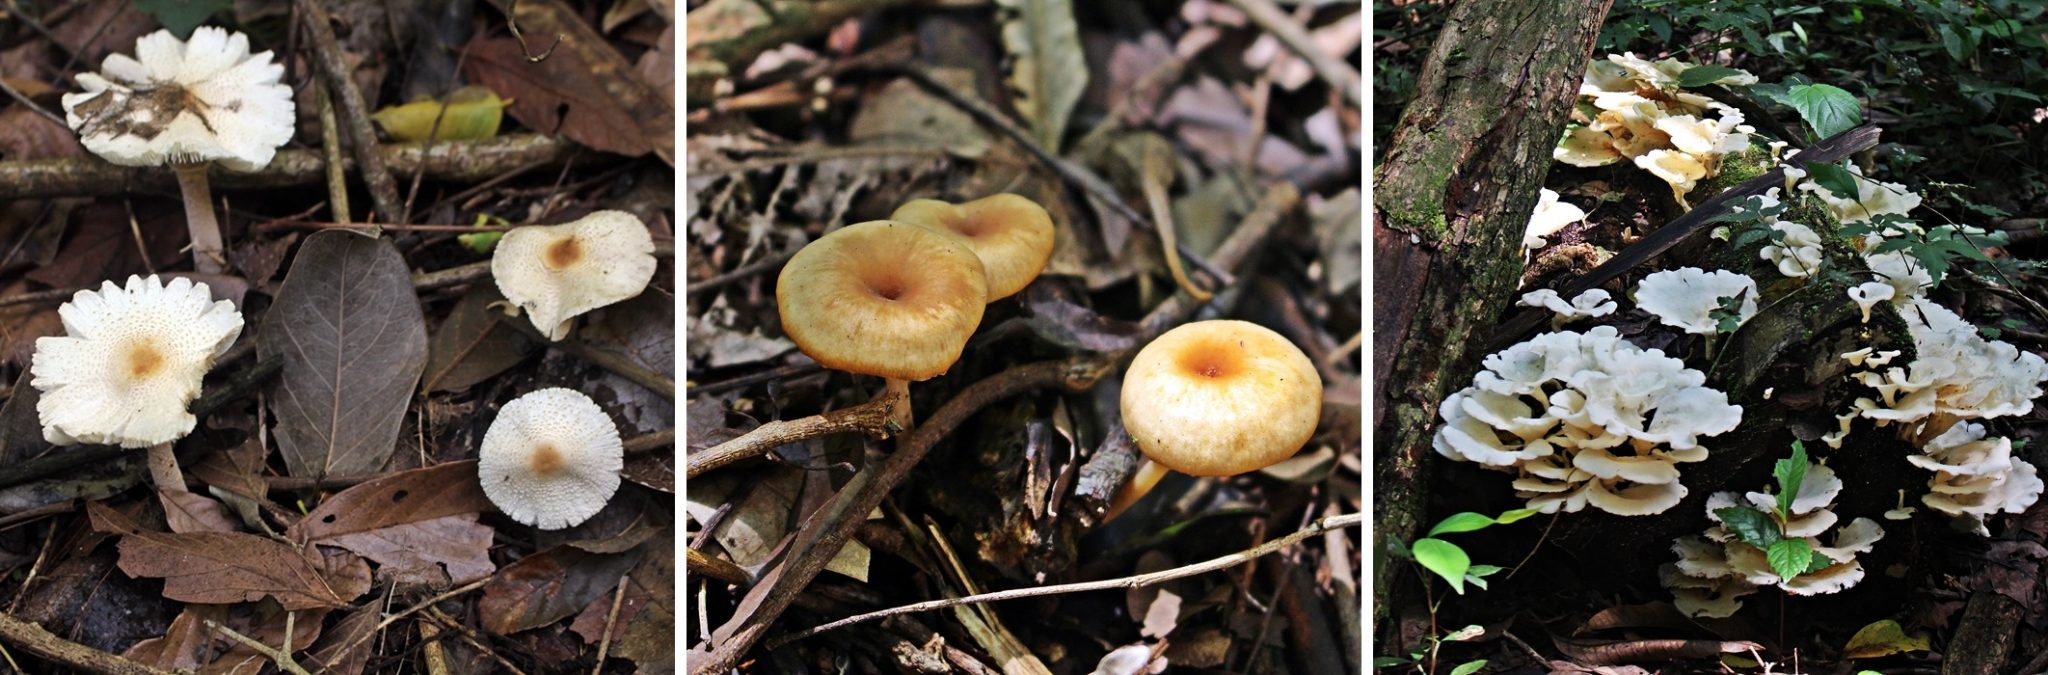 Cogumelos vistos na trilha do Refúgio Biológico, em Itaipu Binacional.